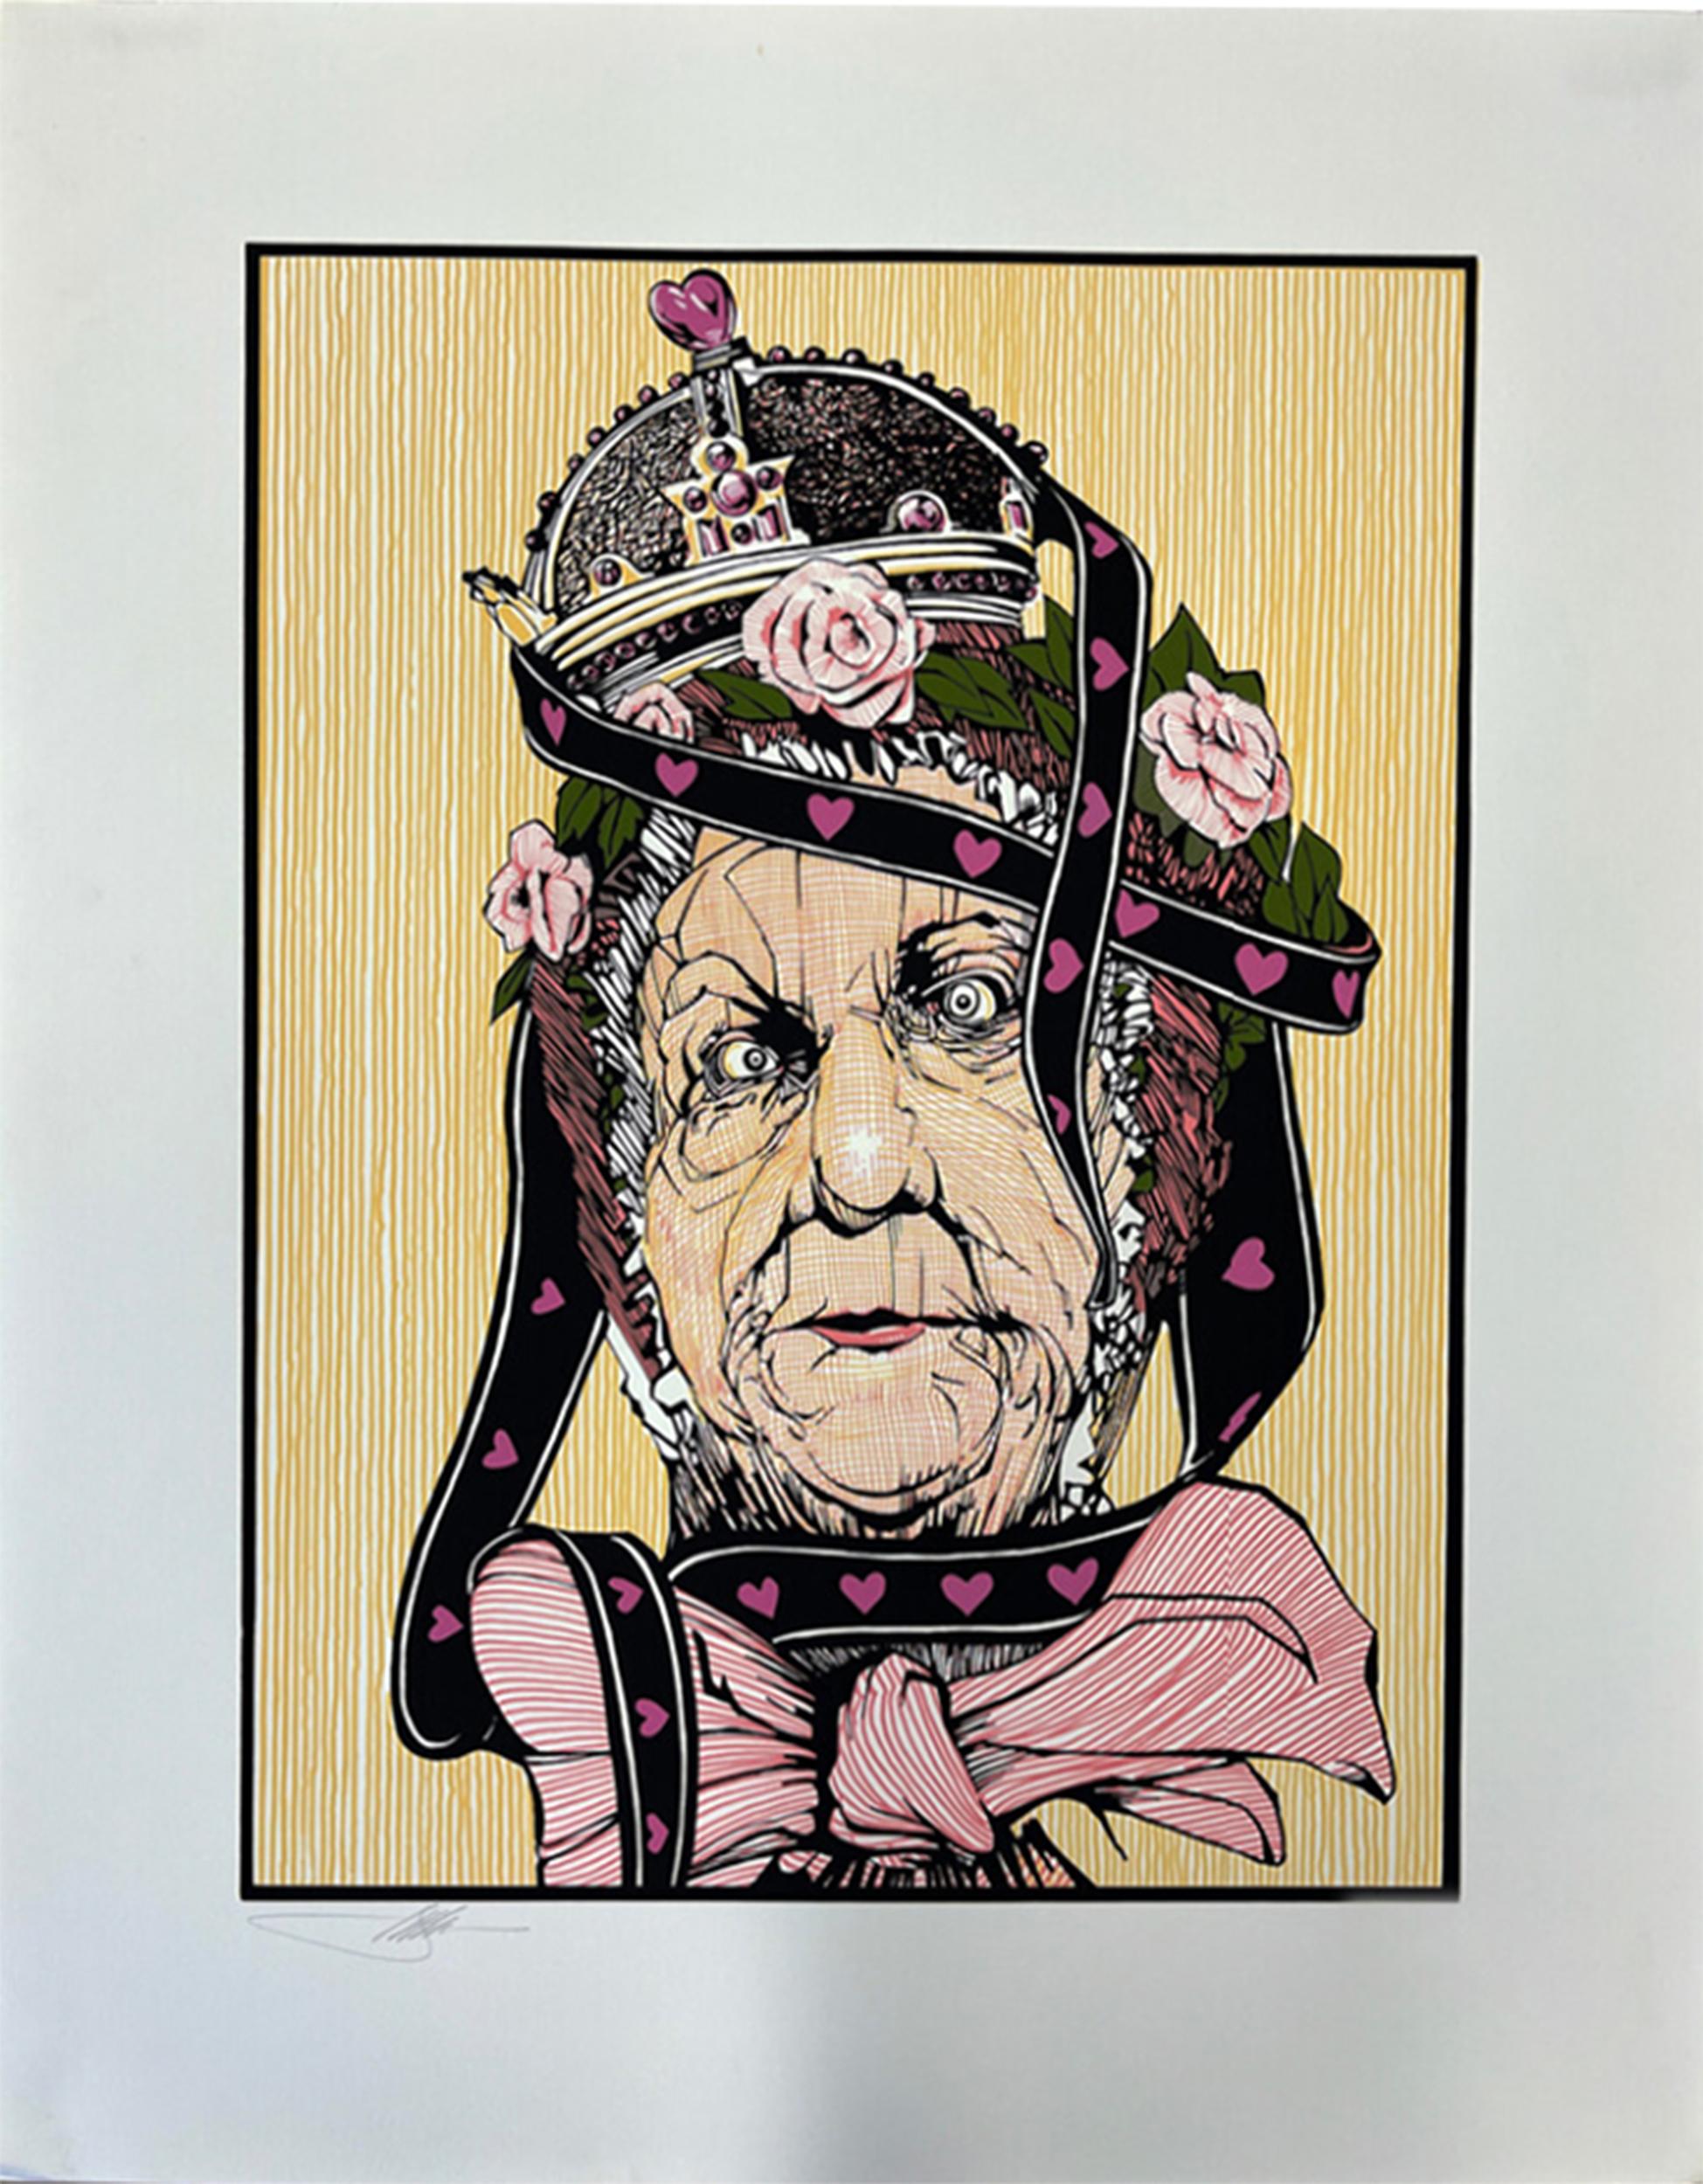 Illustration d'une tête de vieille femme enveloppée de manière désordonnée dans des rubans en forme de cœur et nouée au niveau du cou par un gros nœud rose. Sur sa tête trône une couronne traditionnelle ainsi qu'une couronne de roses roses pâles.